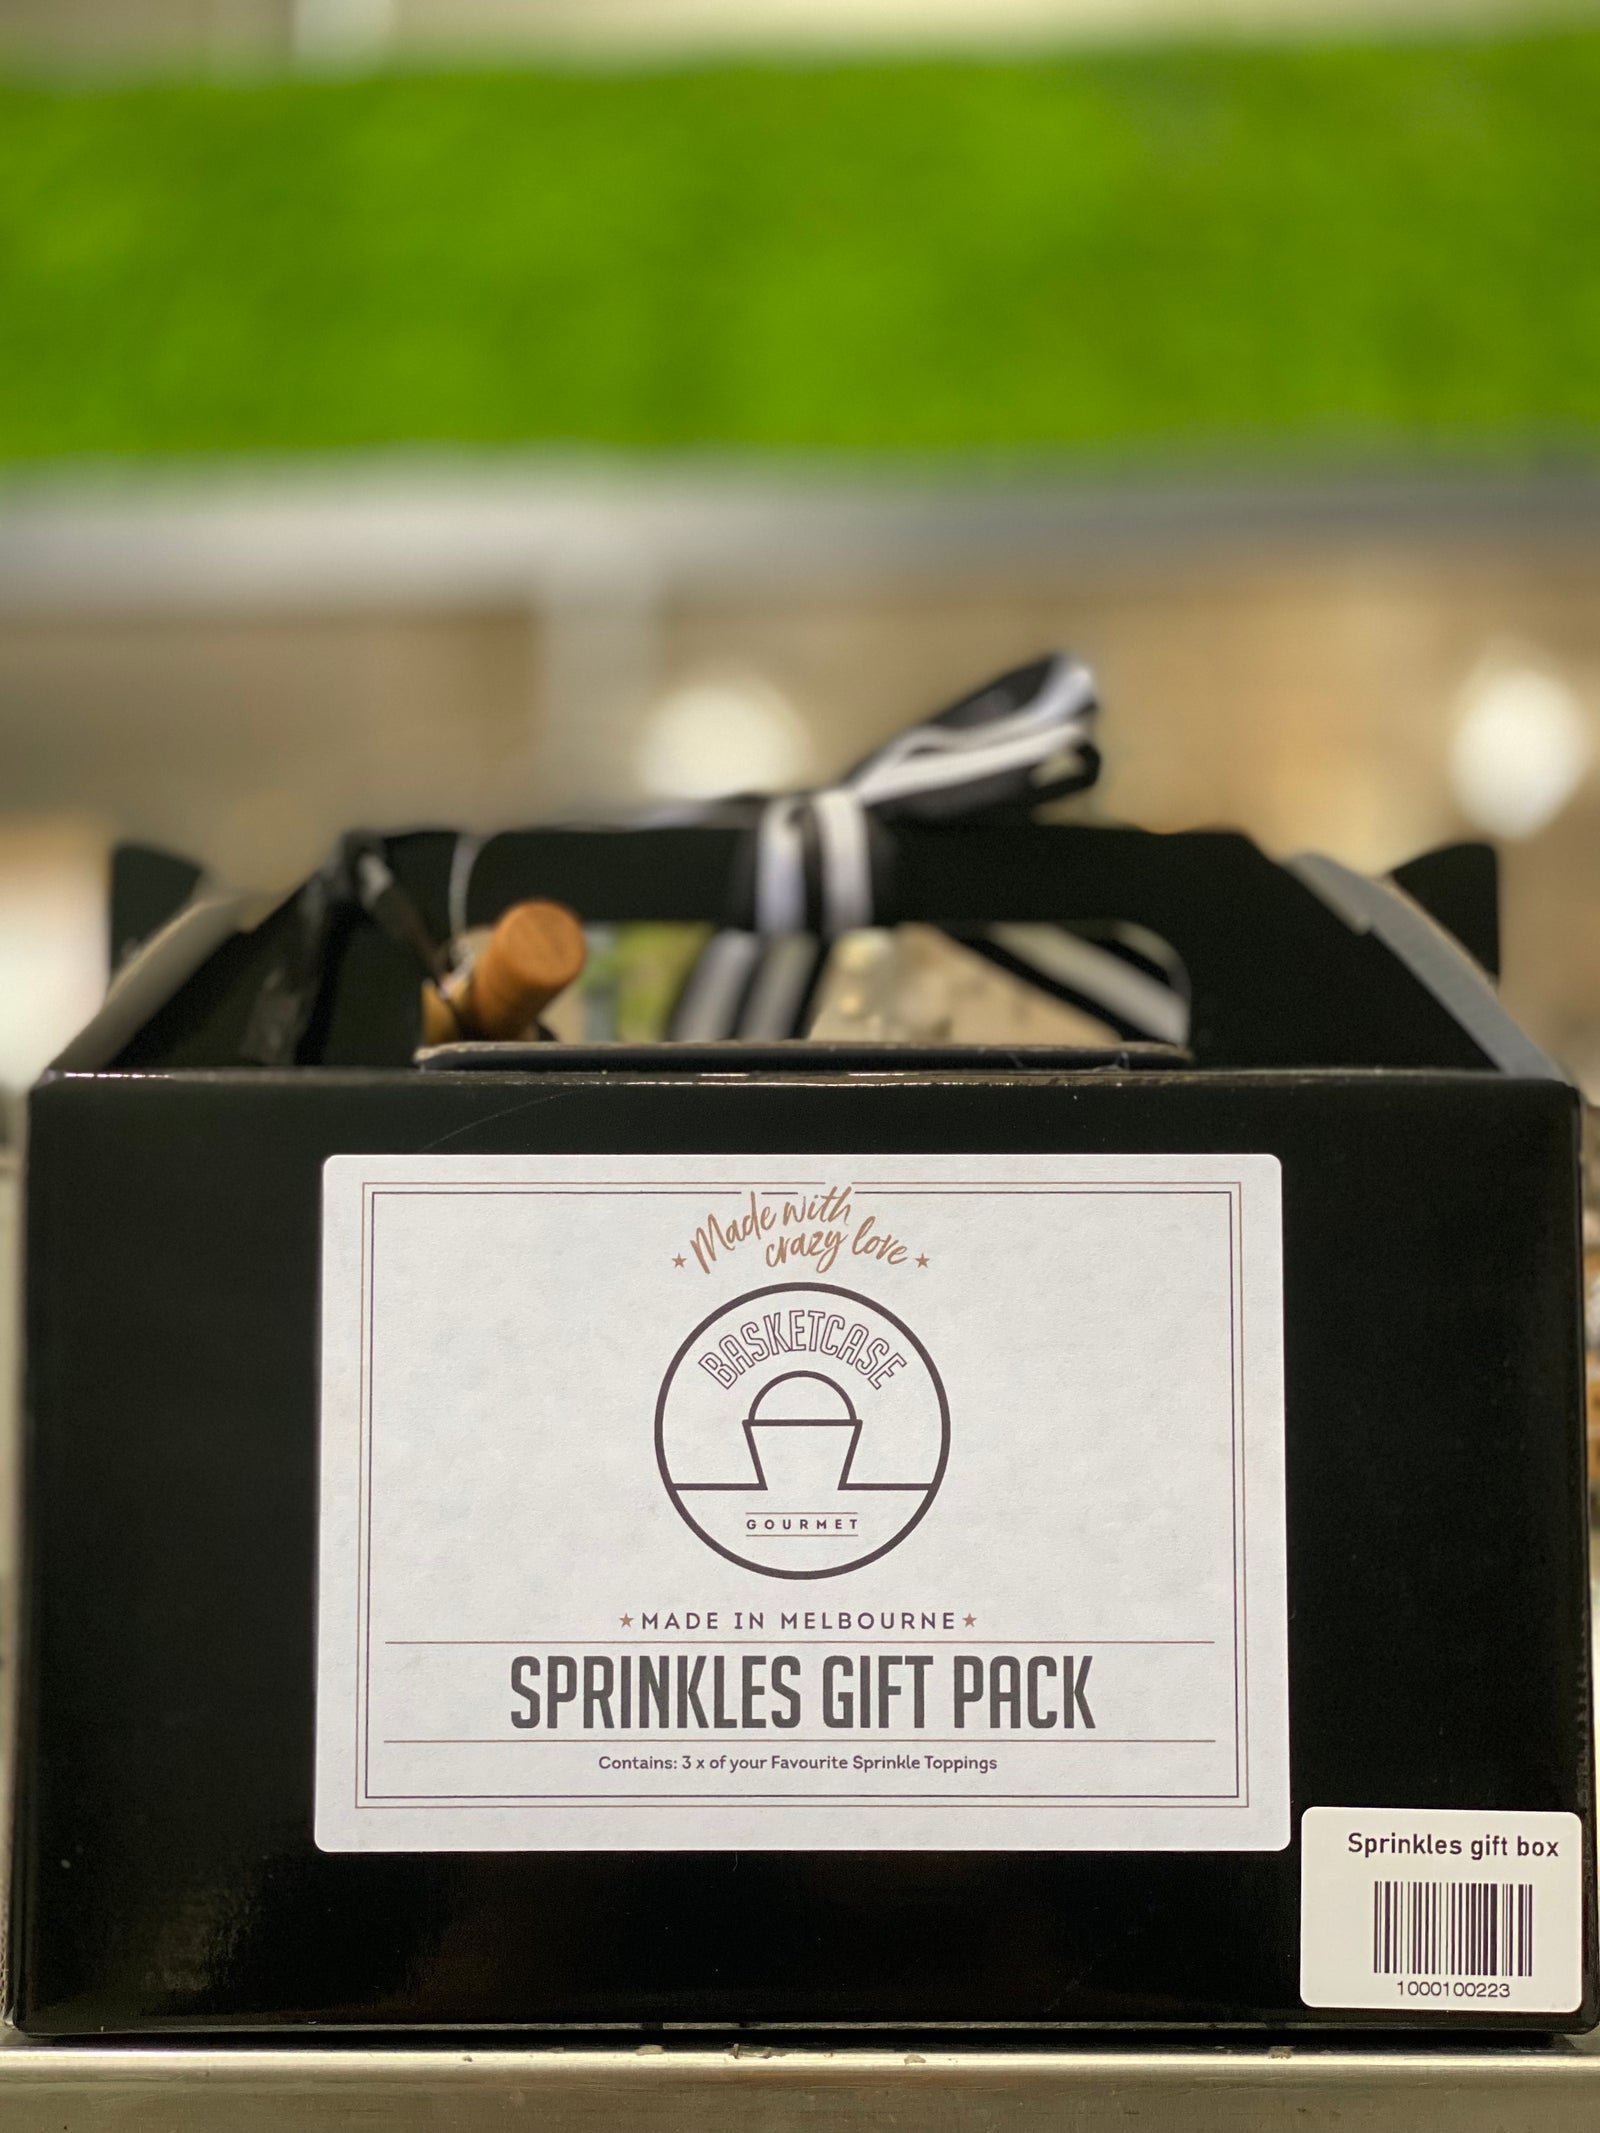 Gift Box - Gourmet Sprinkles